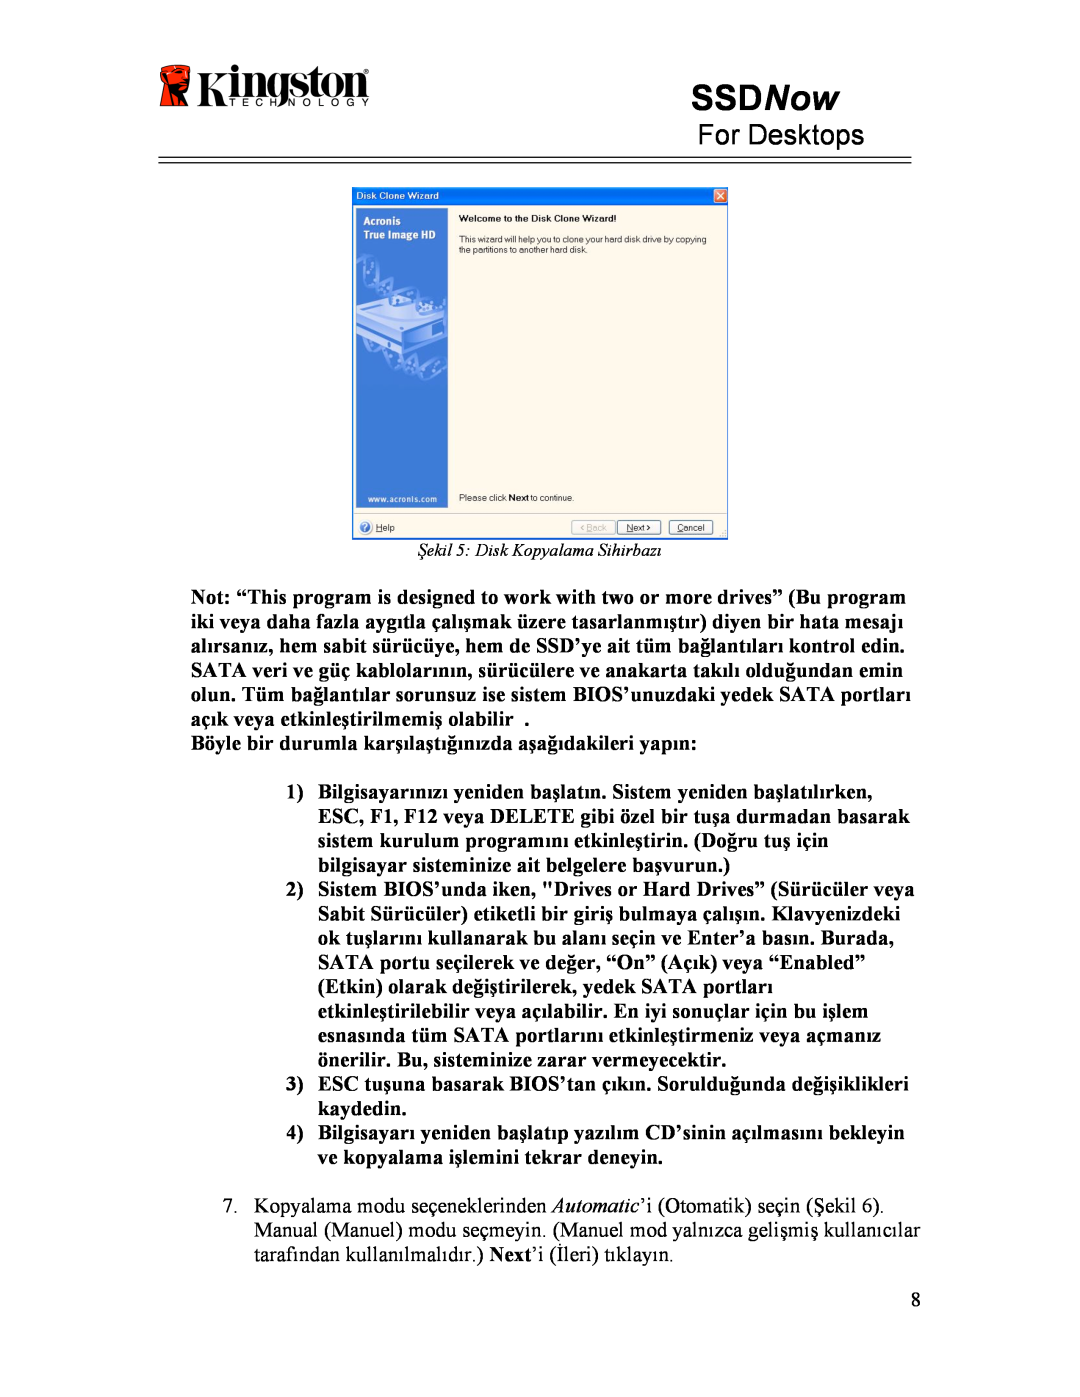 Kingston Technology 07-16-2009 manual SSDNow, For Desktops, Böyle bir durumla karşılaştığınızda aşağıdakileri yapın 